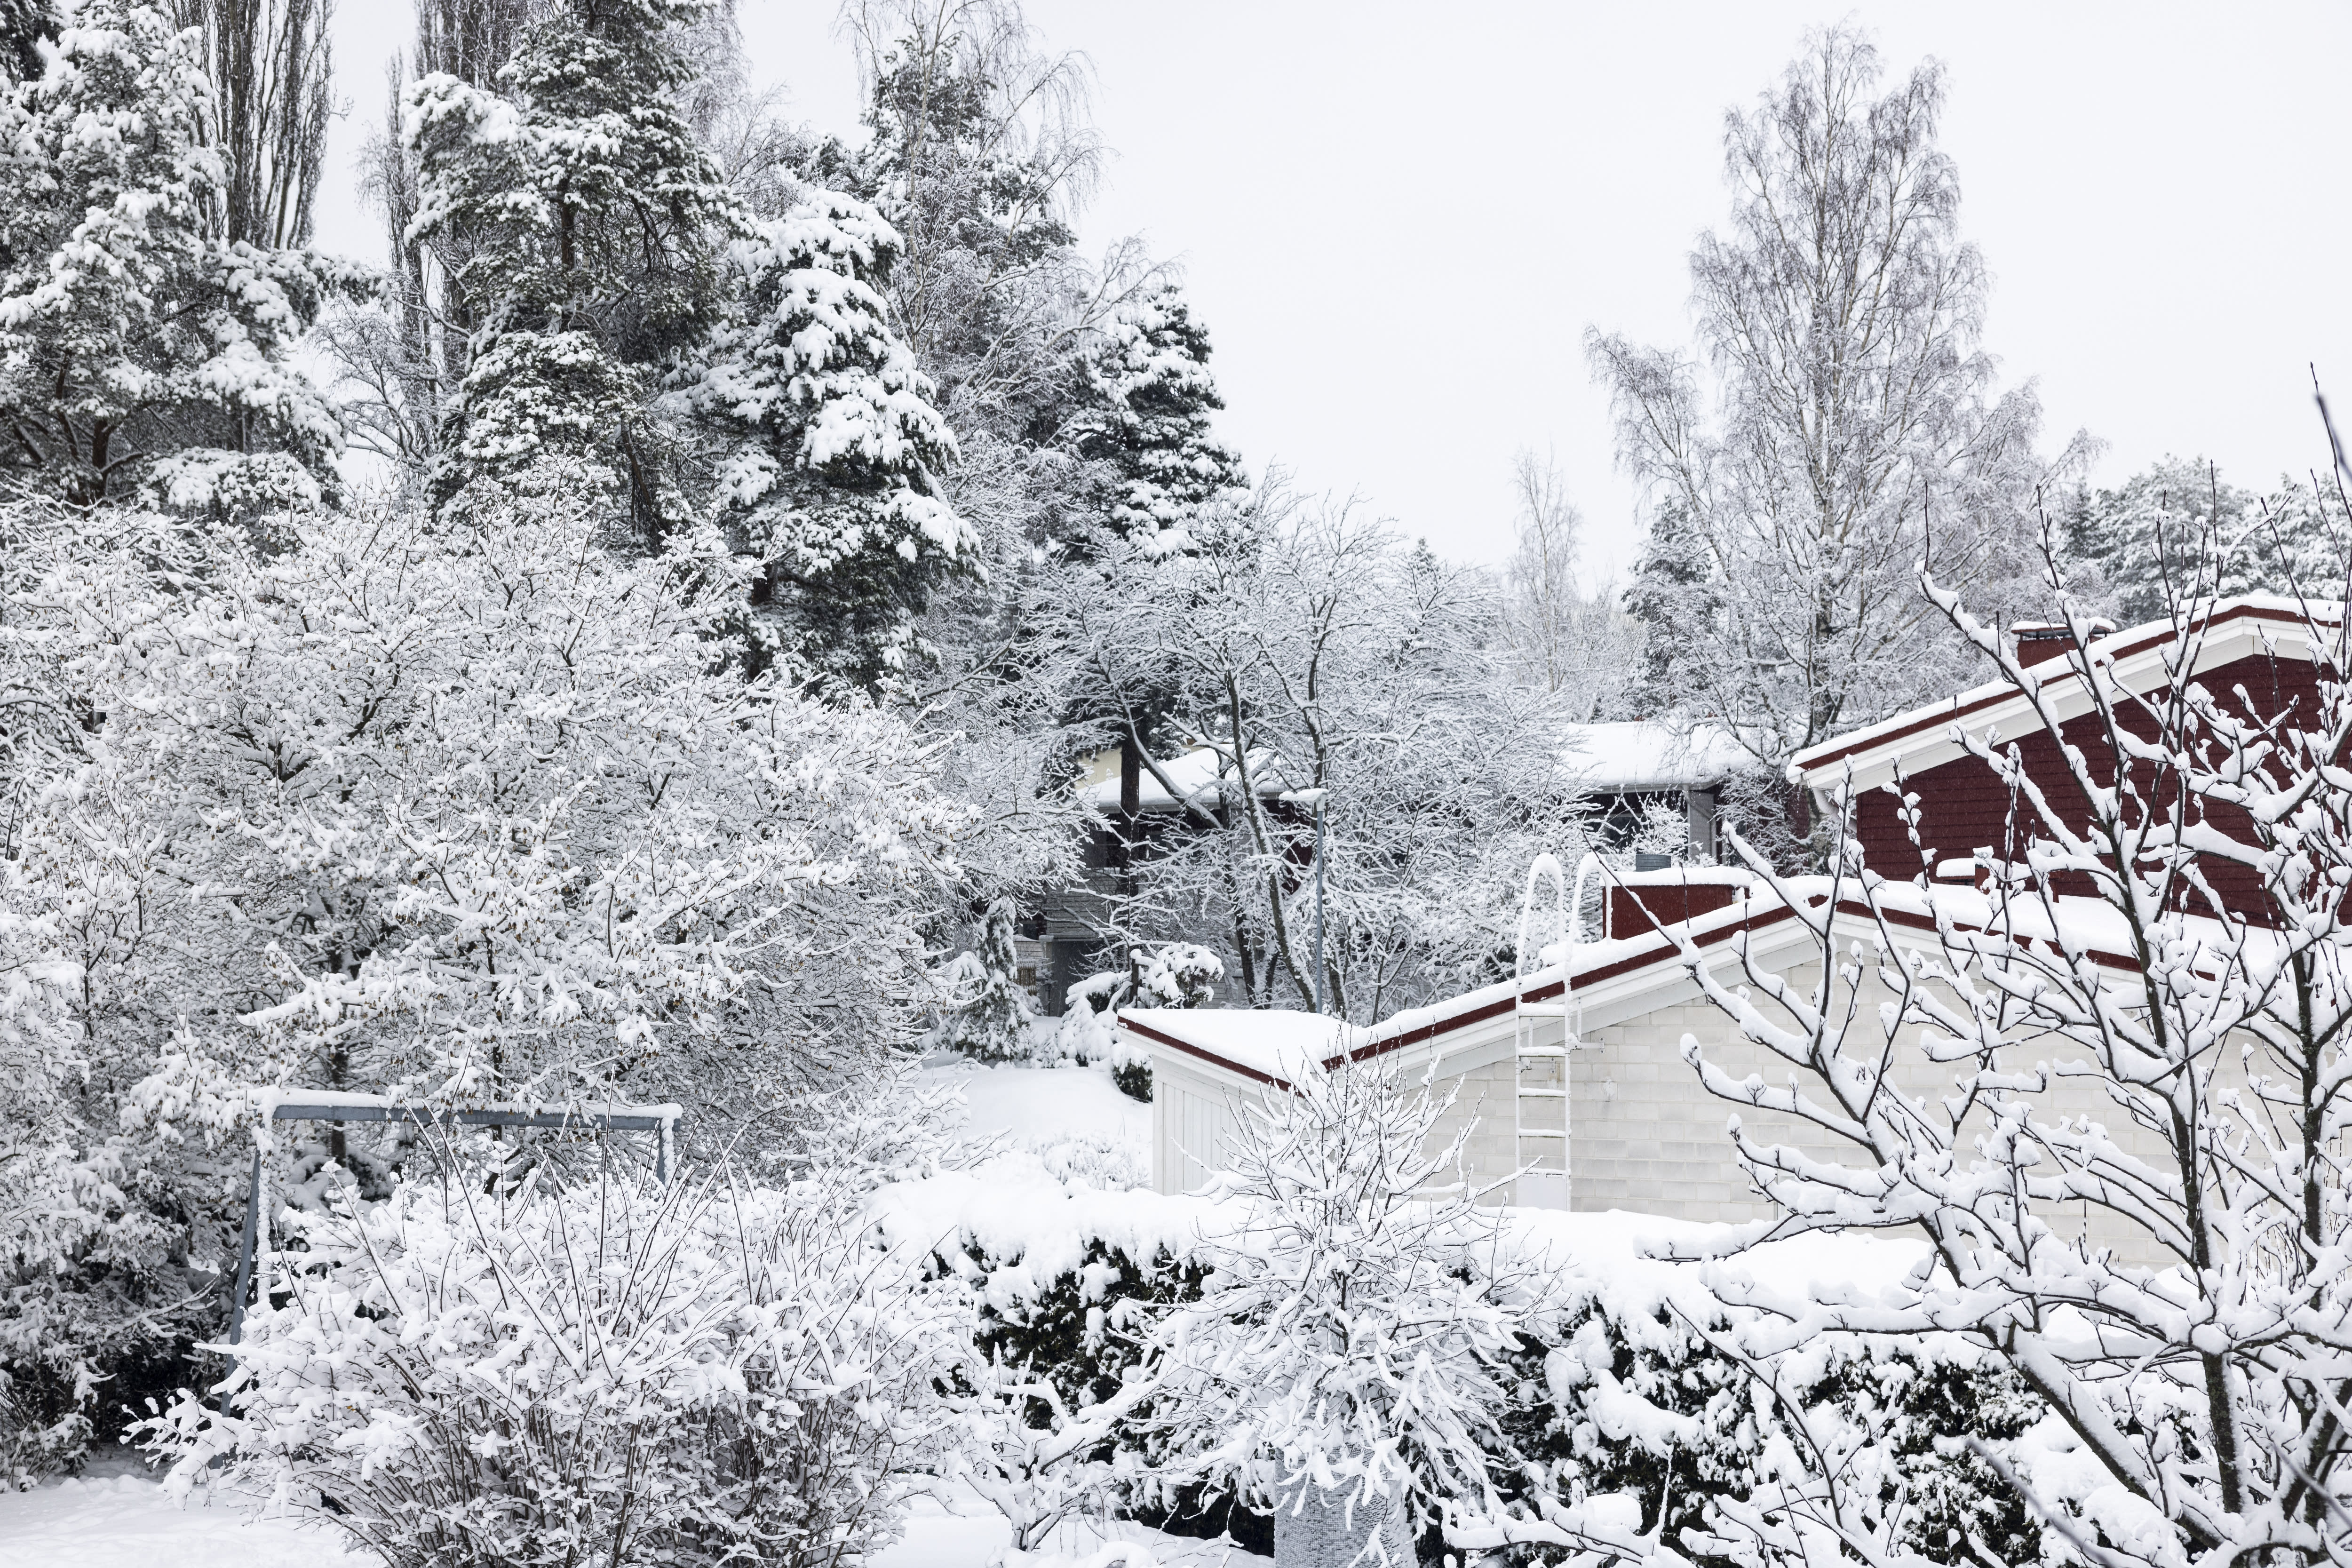 Helsinki, um diese Woche „den kältesten Tag des Winters“ zu erleben